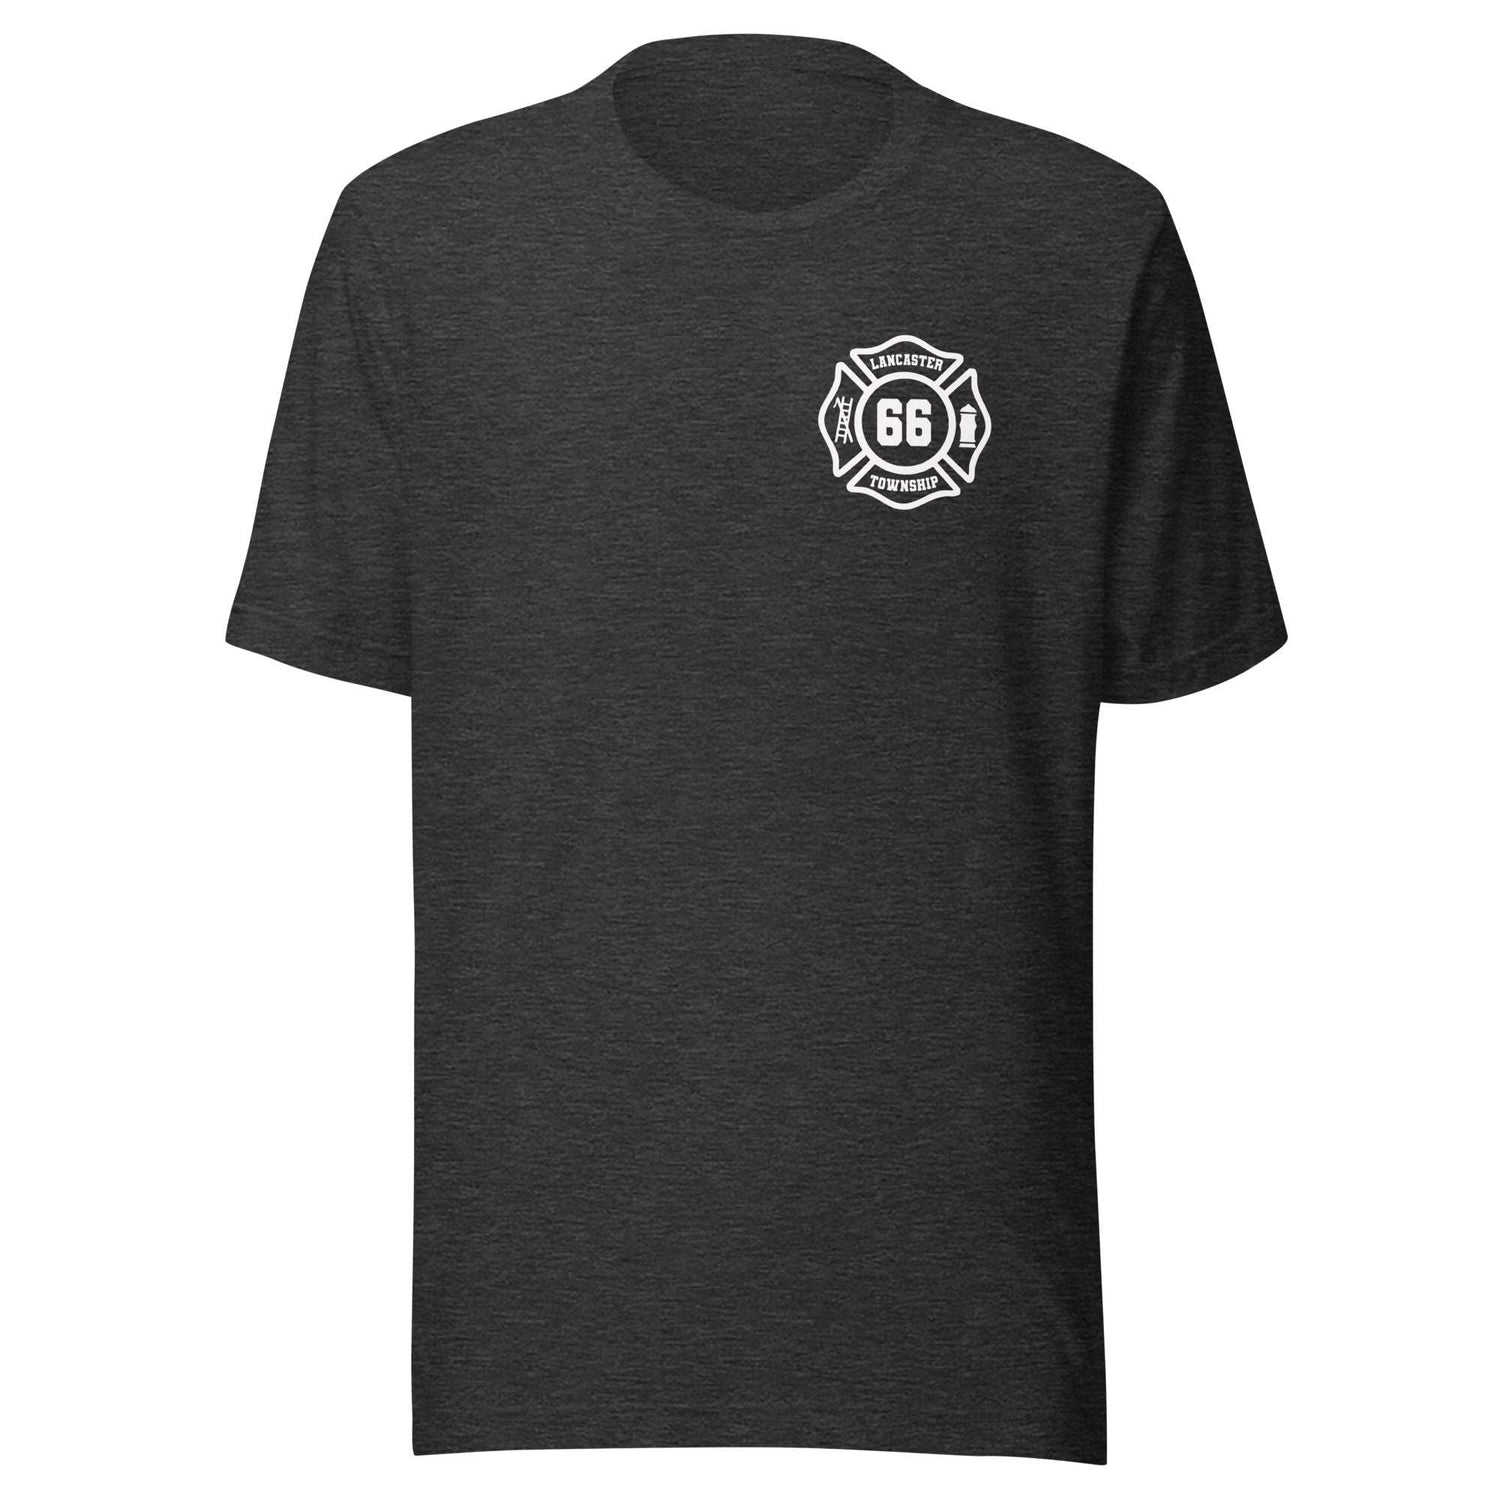 Lancaster Township Fire Department Premium T-shirt